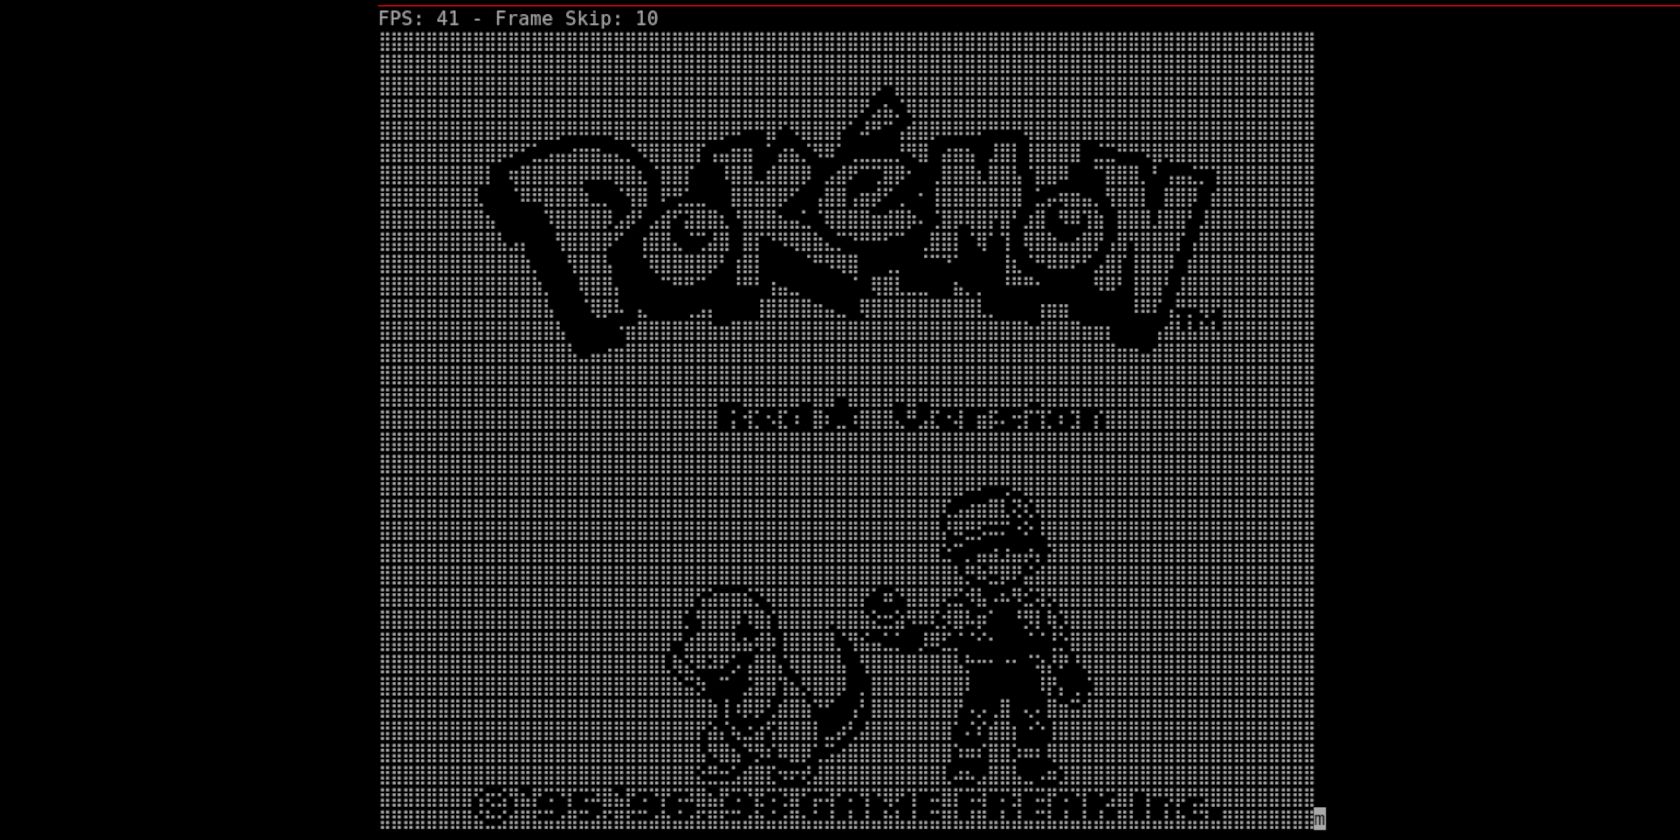 Tela inicial da estrela vermelha do Pokémon no terminal Linux